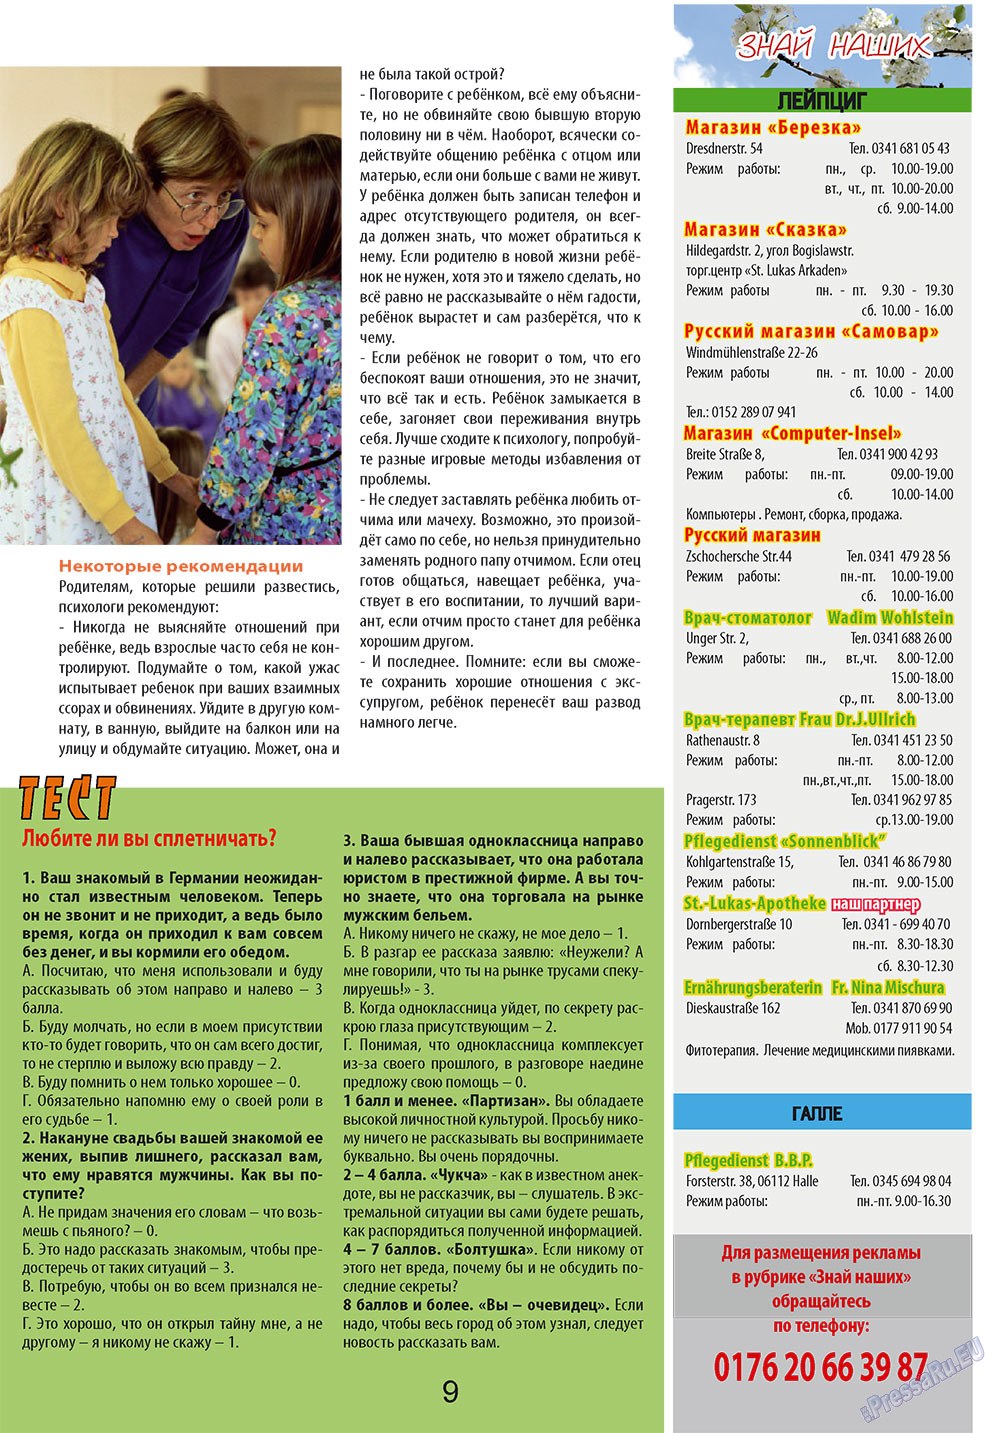 Антенна, журнал. 2010 №8 стр.9